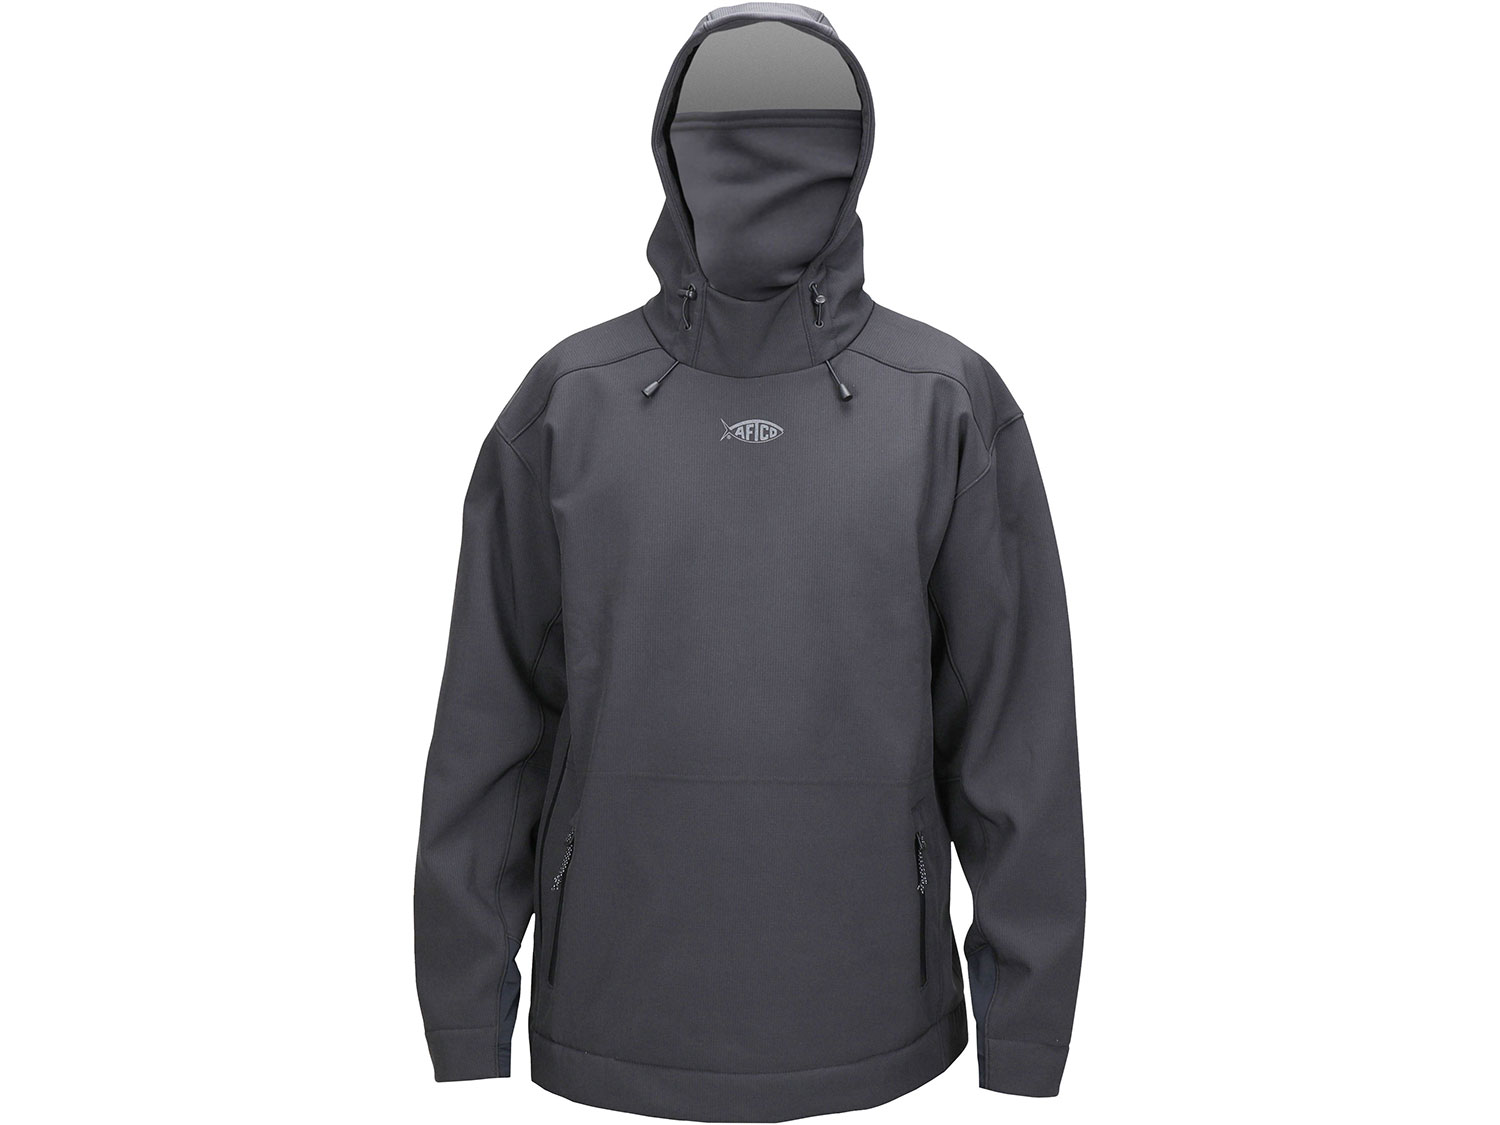 A black waterproof hoodie